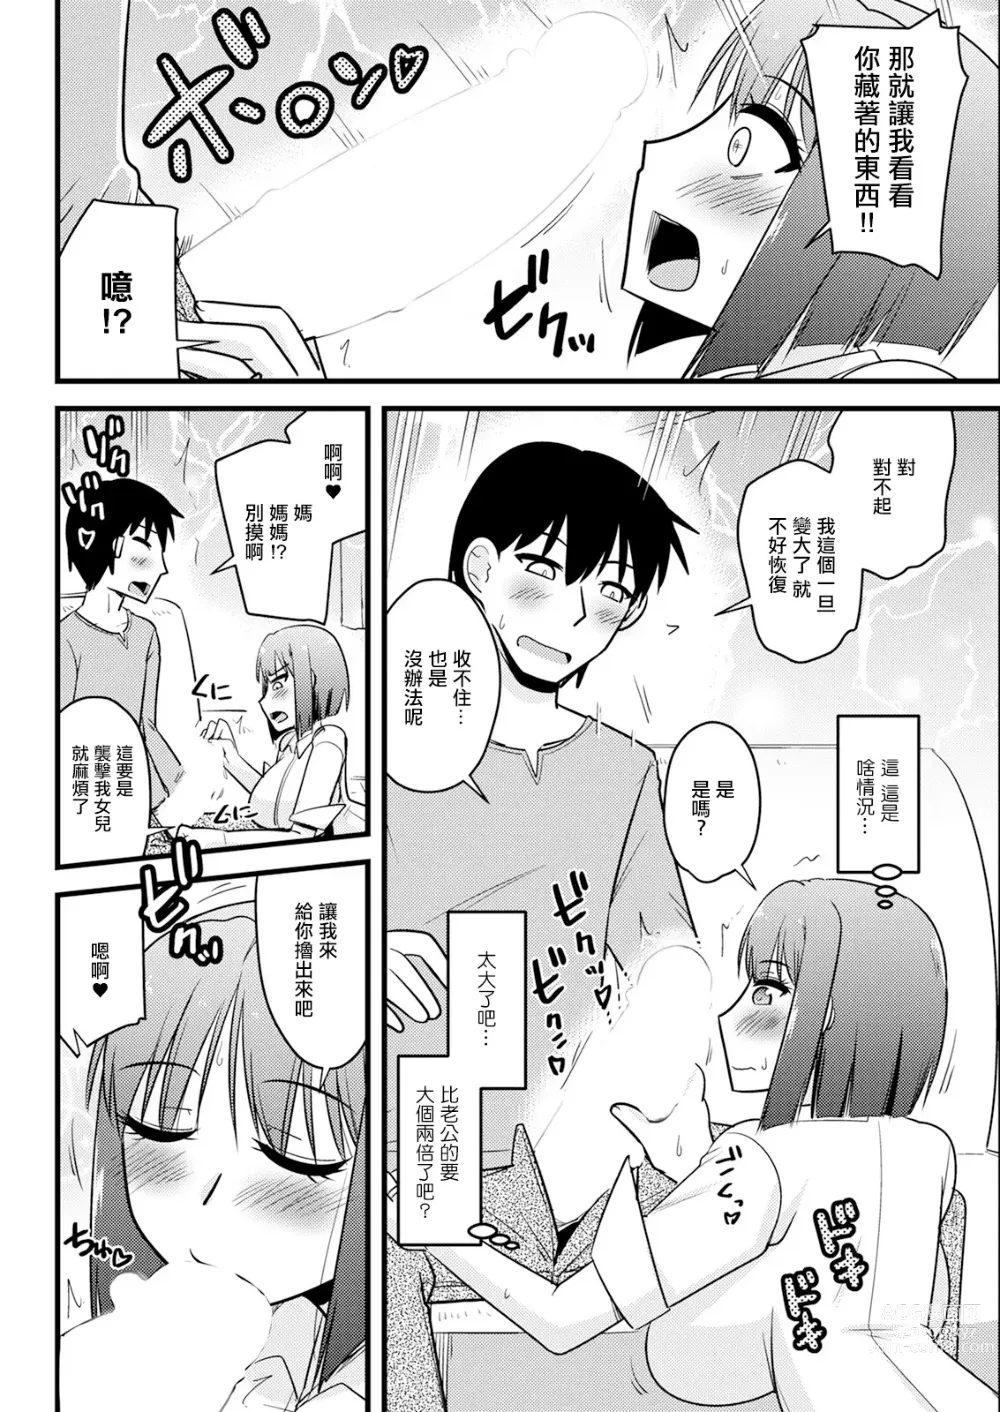 Page 4 of manga Kanojo no Haha no Kousai Test